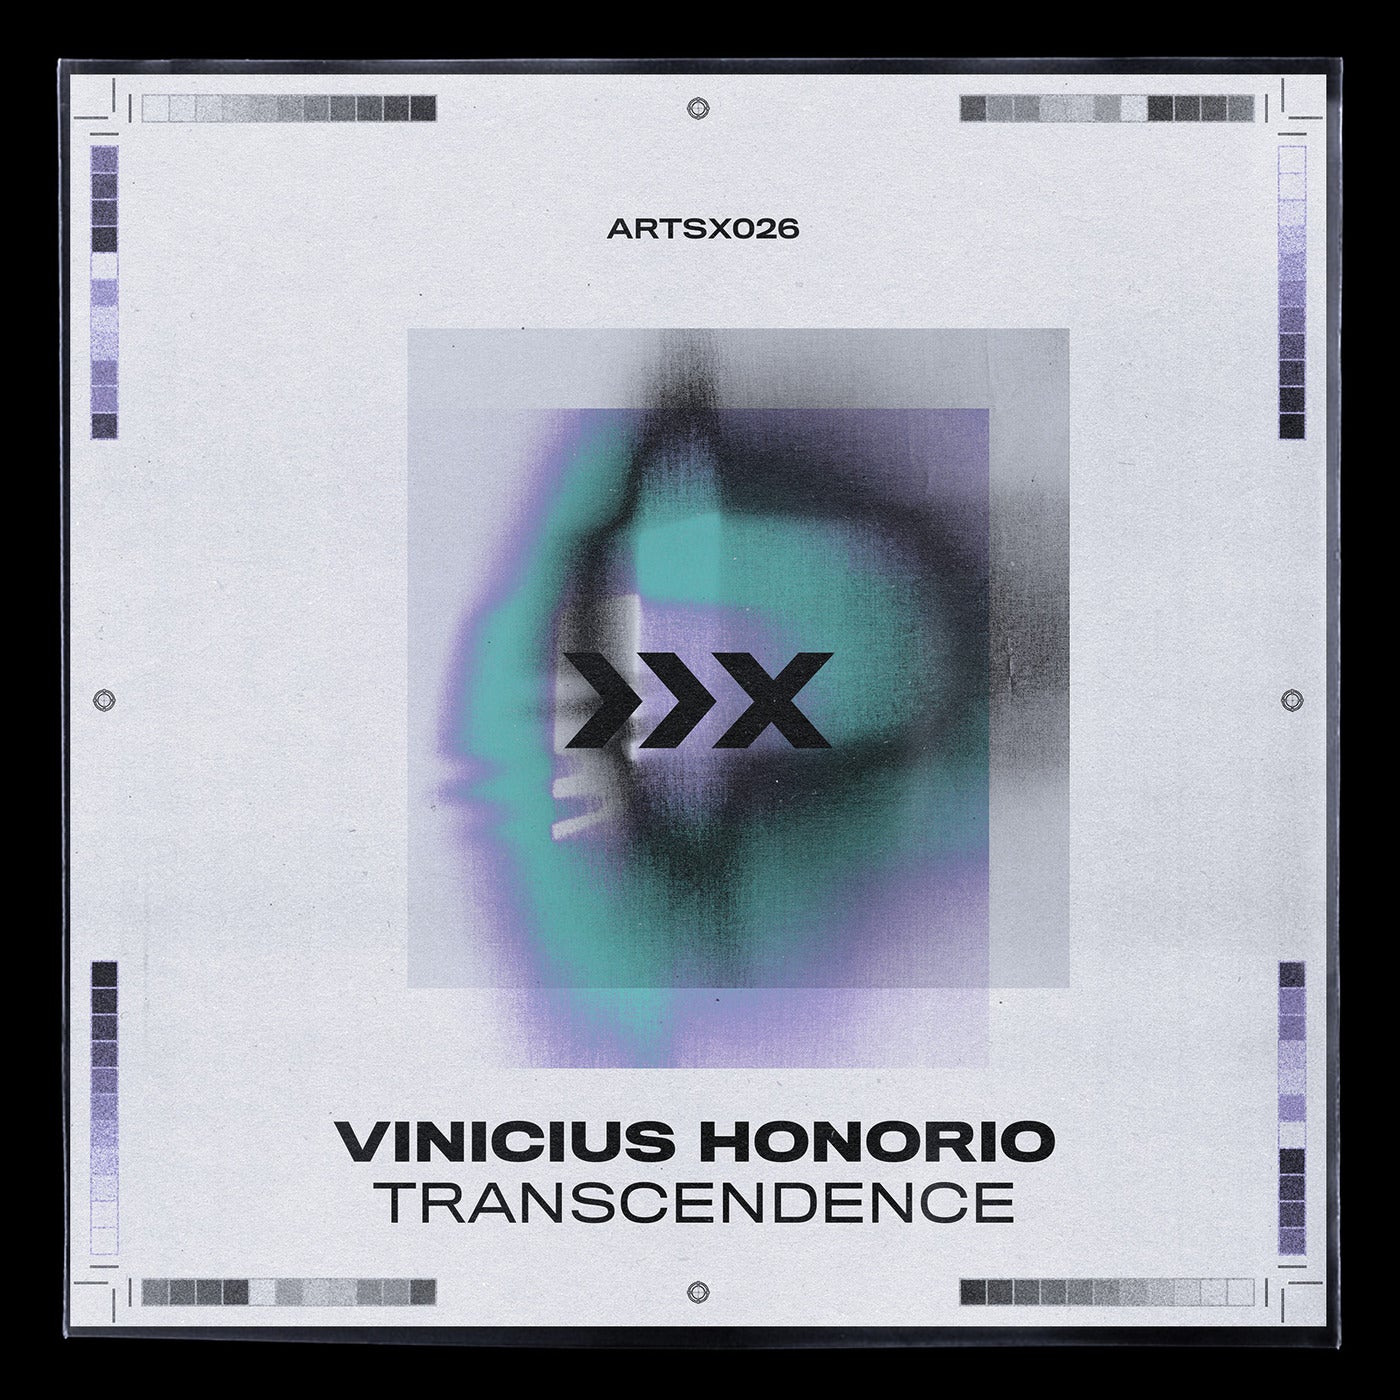 Vinicius Honorio - Transcendence [ARTSX026]